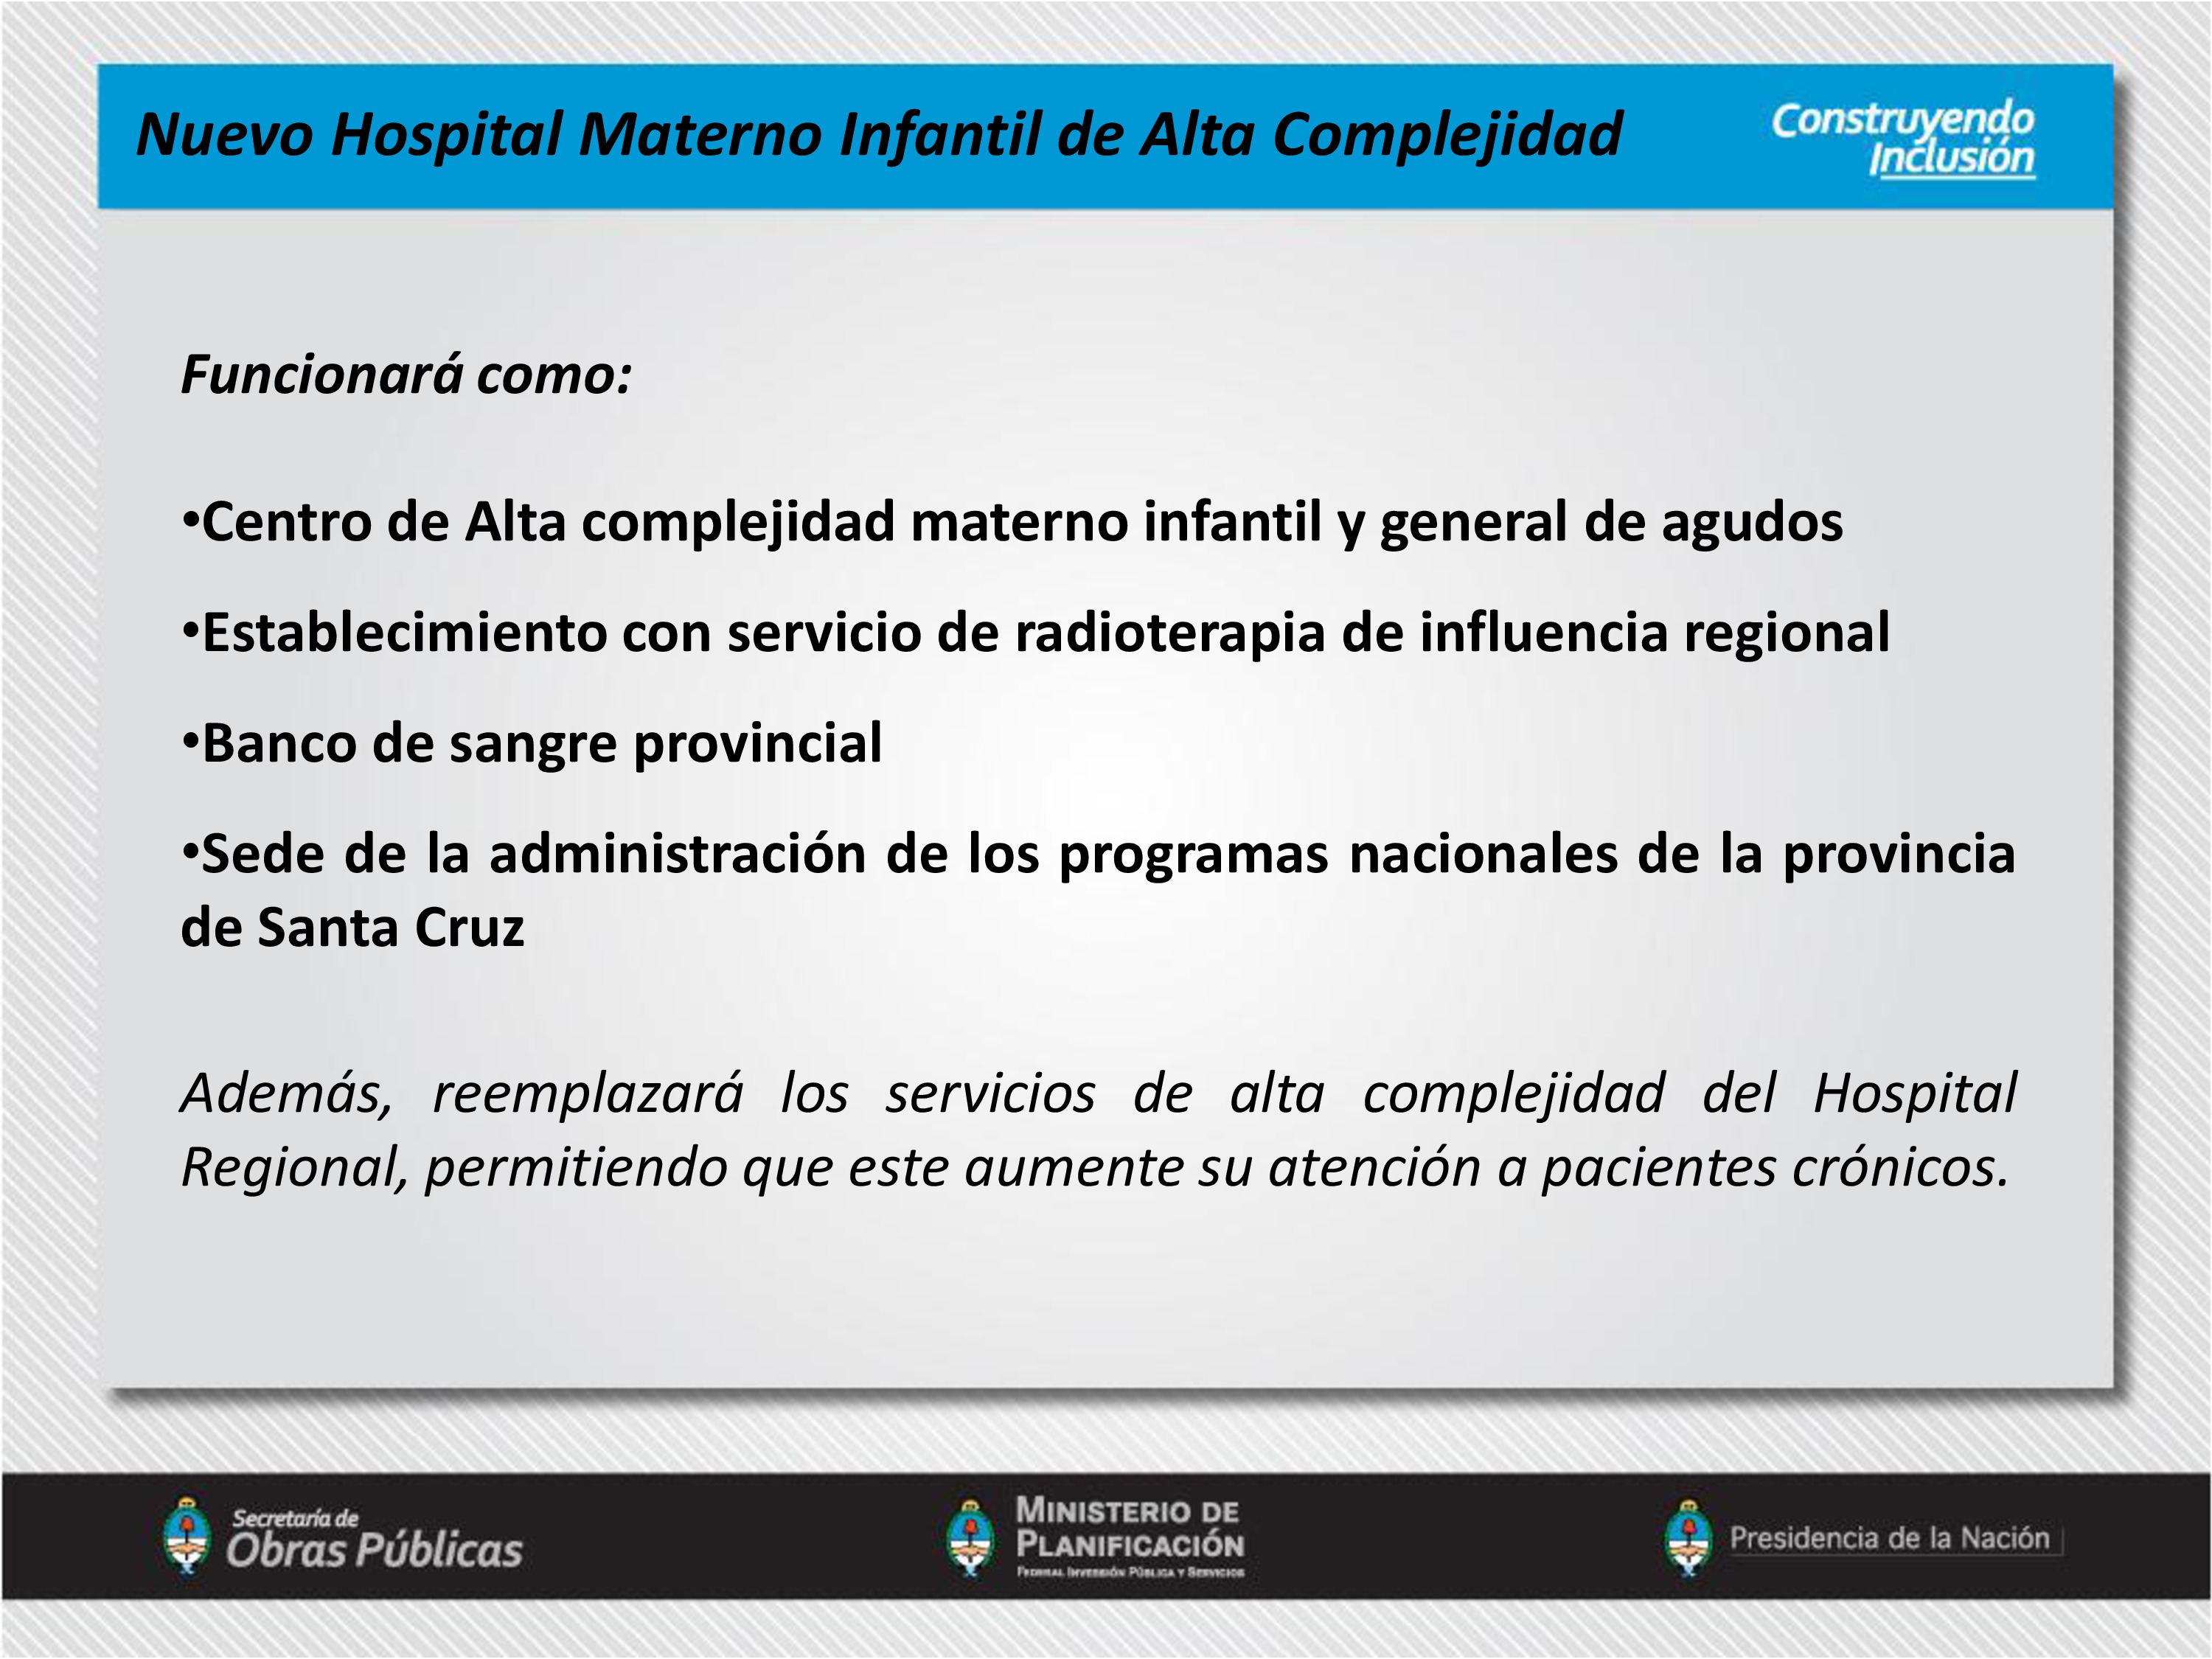 Nuevo Hospital Materno Infantil de Alta Complejidad de Río Gallegos